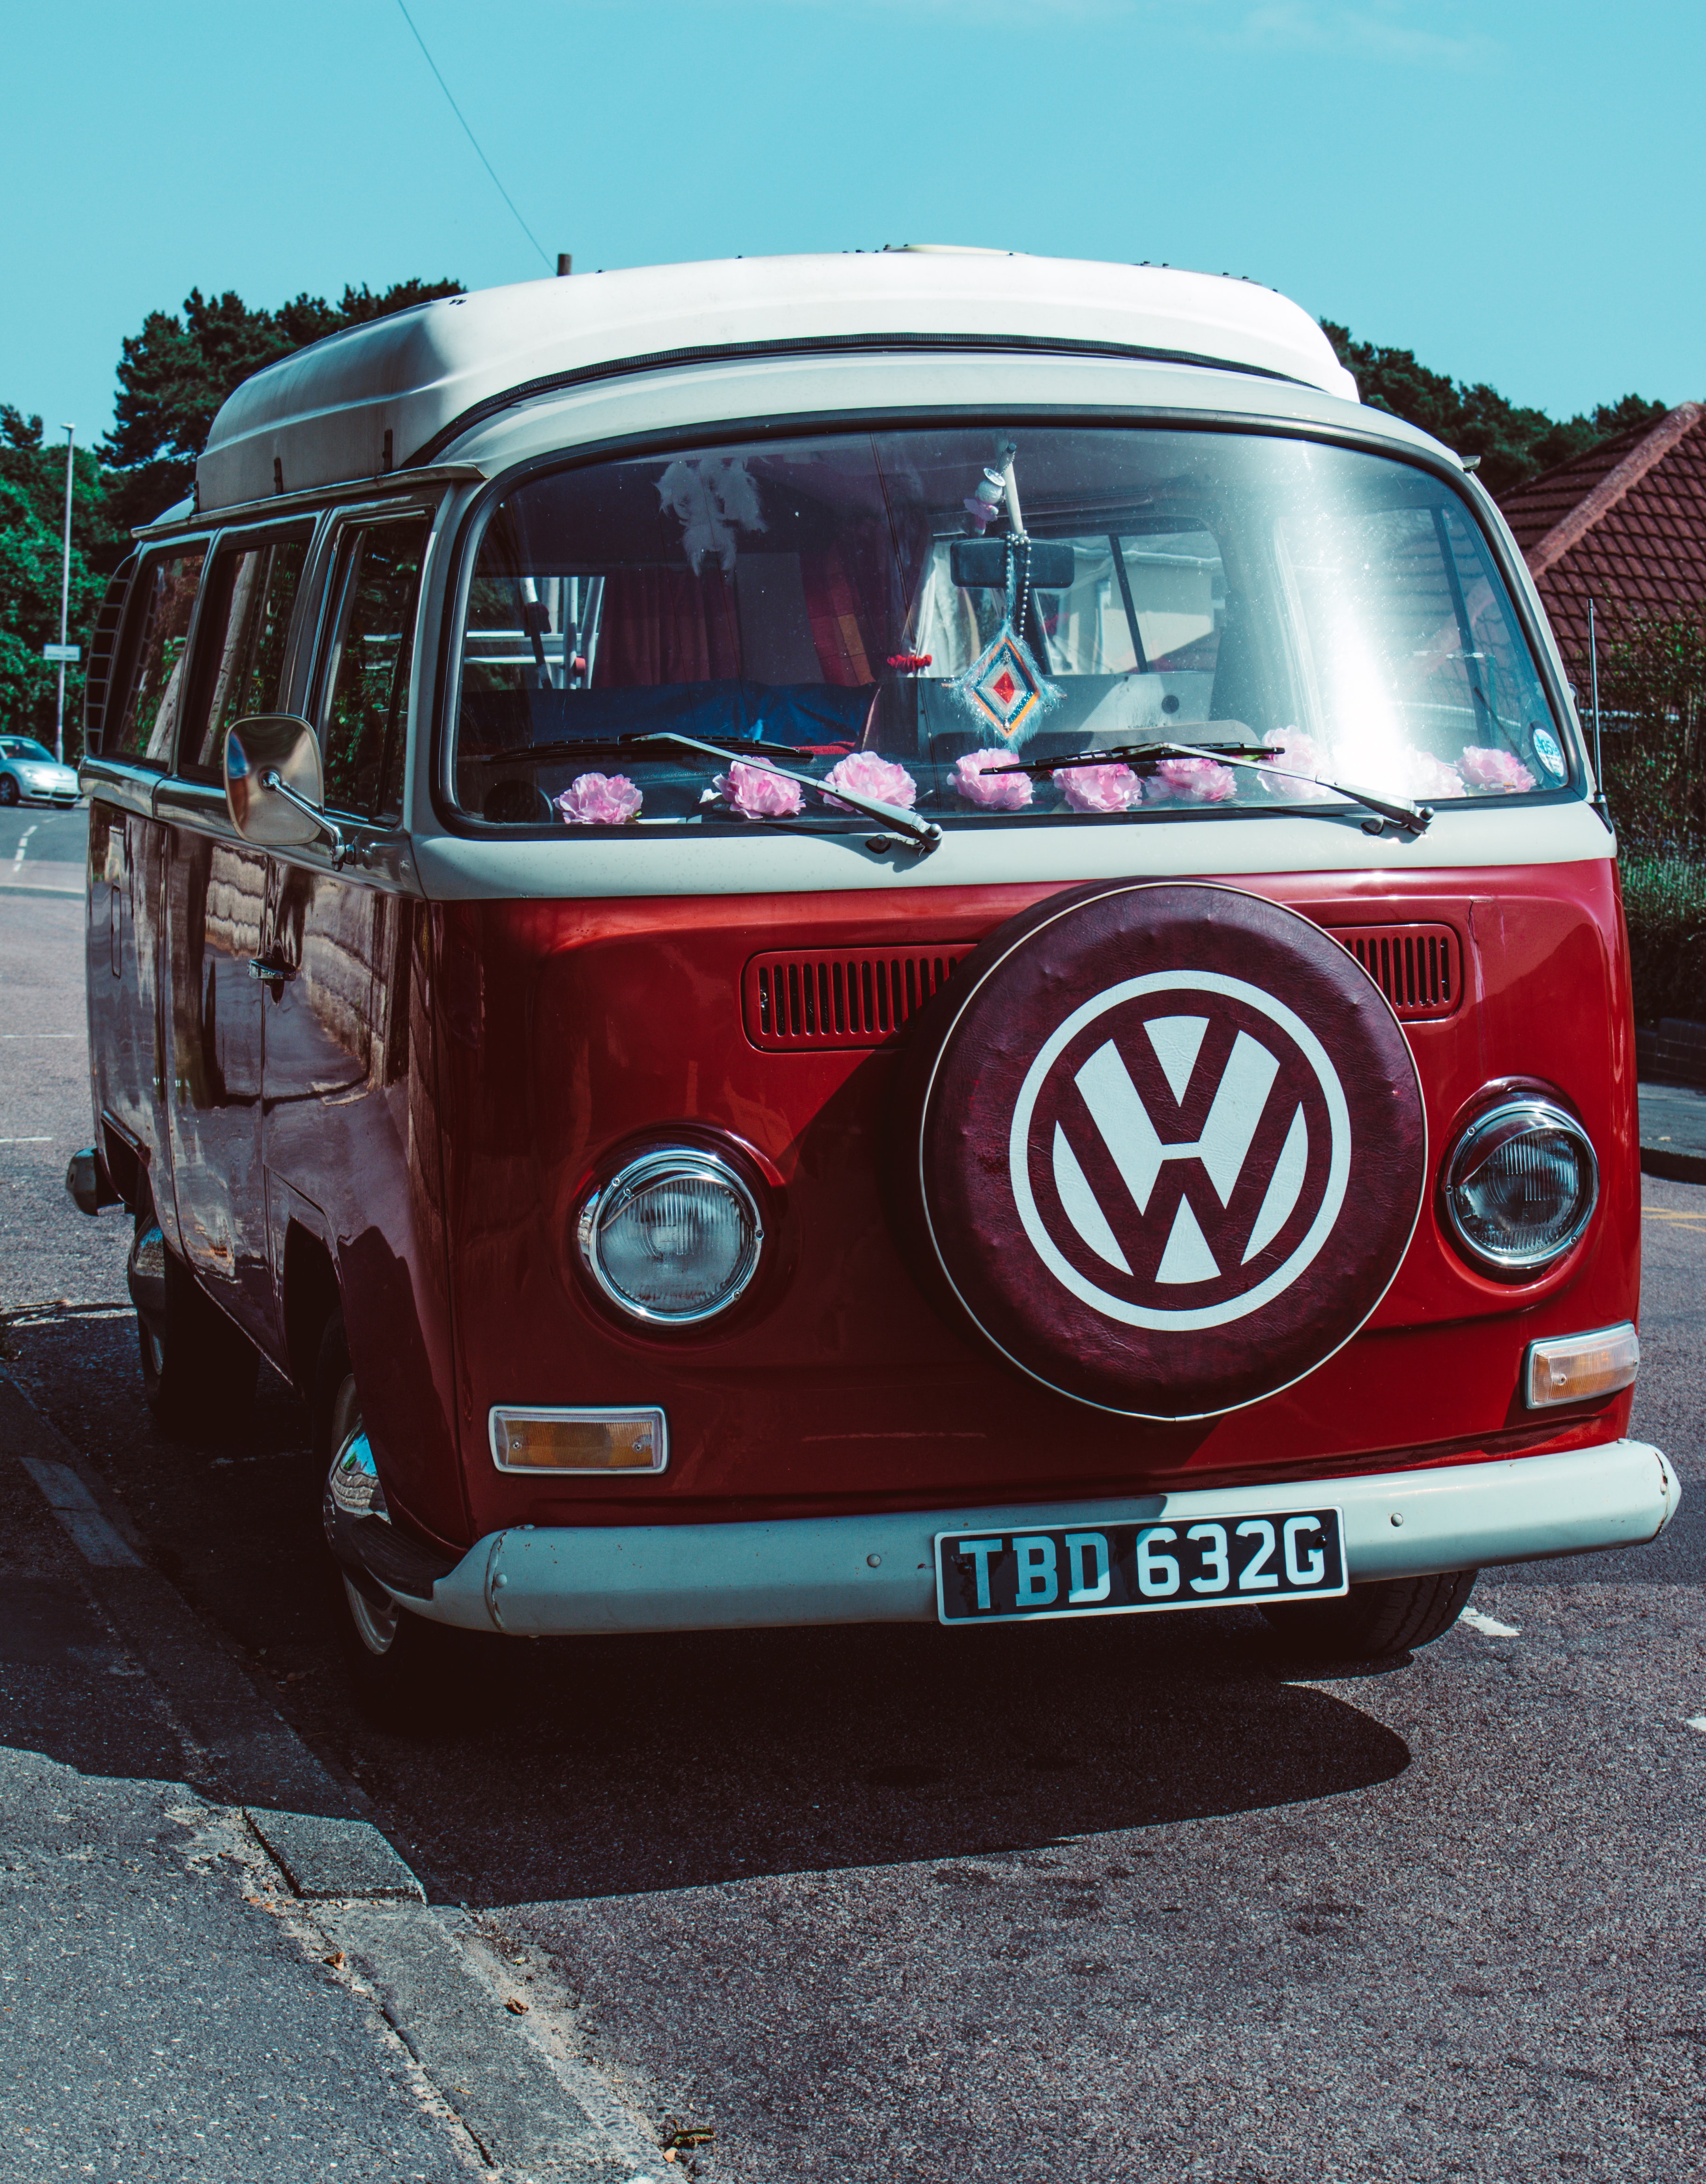 Volkswagen Transporter , HD Wallpaper & Backgrounds